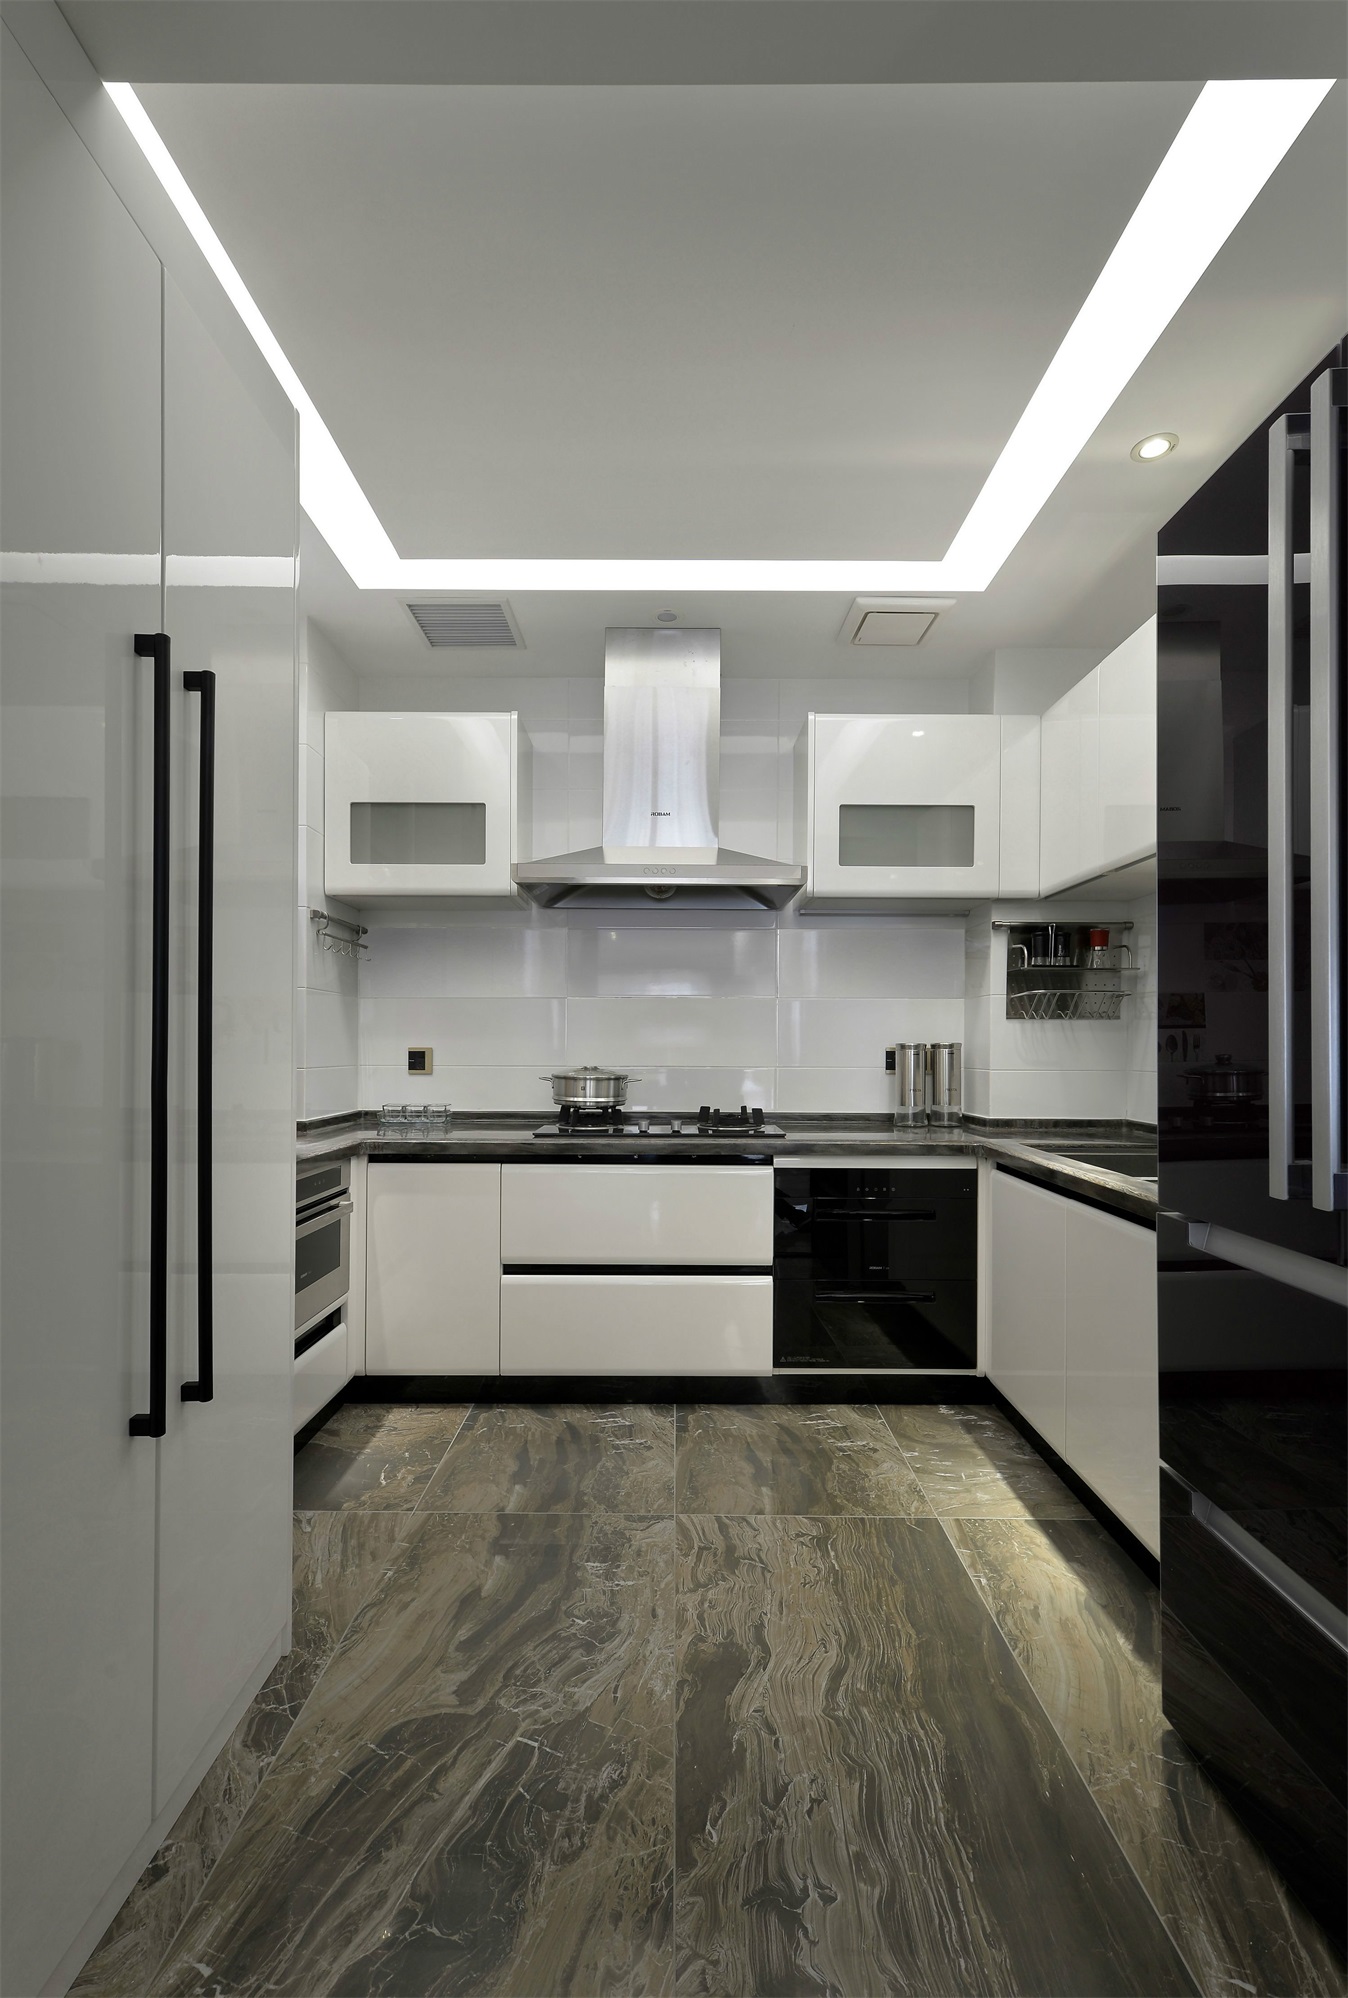 设计师通过白色橱柜、黑色工作台和灯光设计，为厨房空间注入一抹艺术气息。